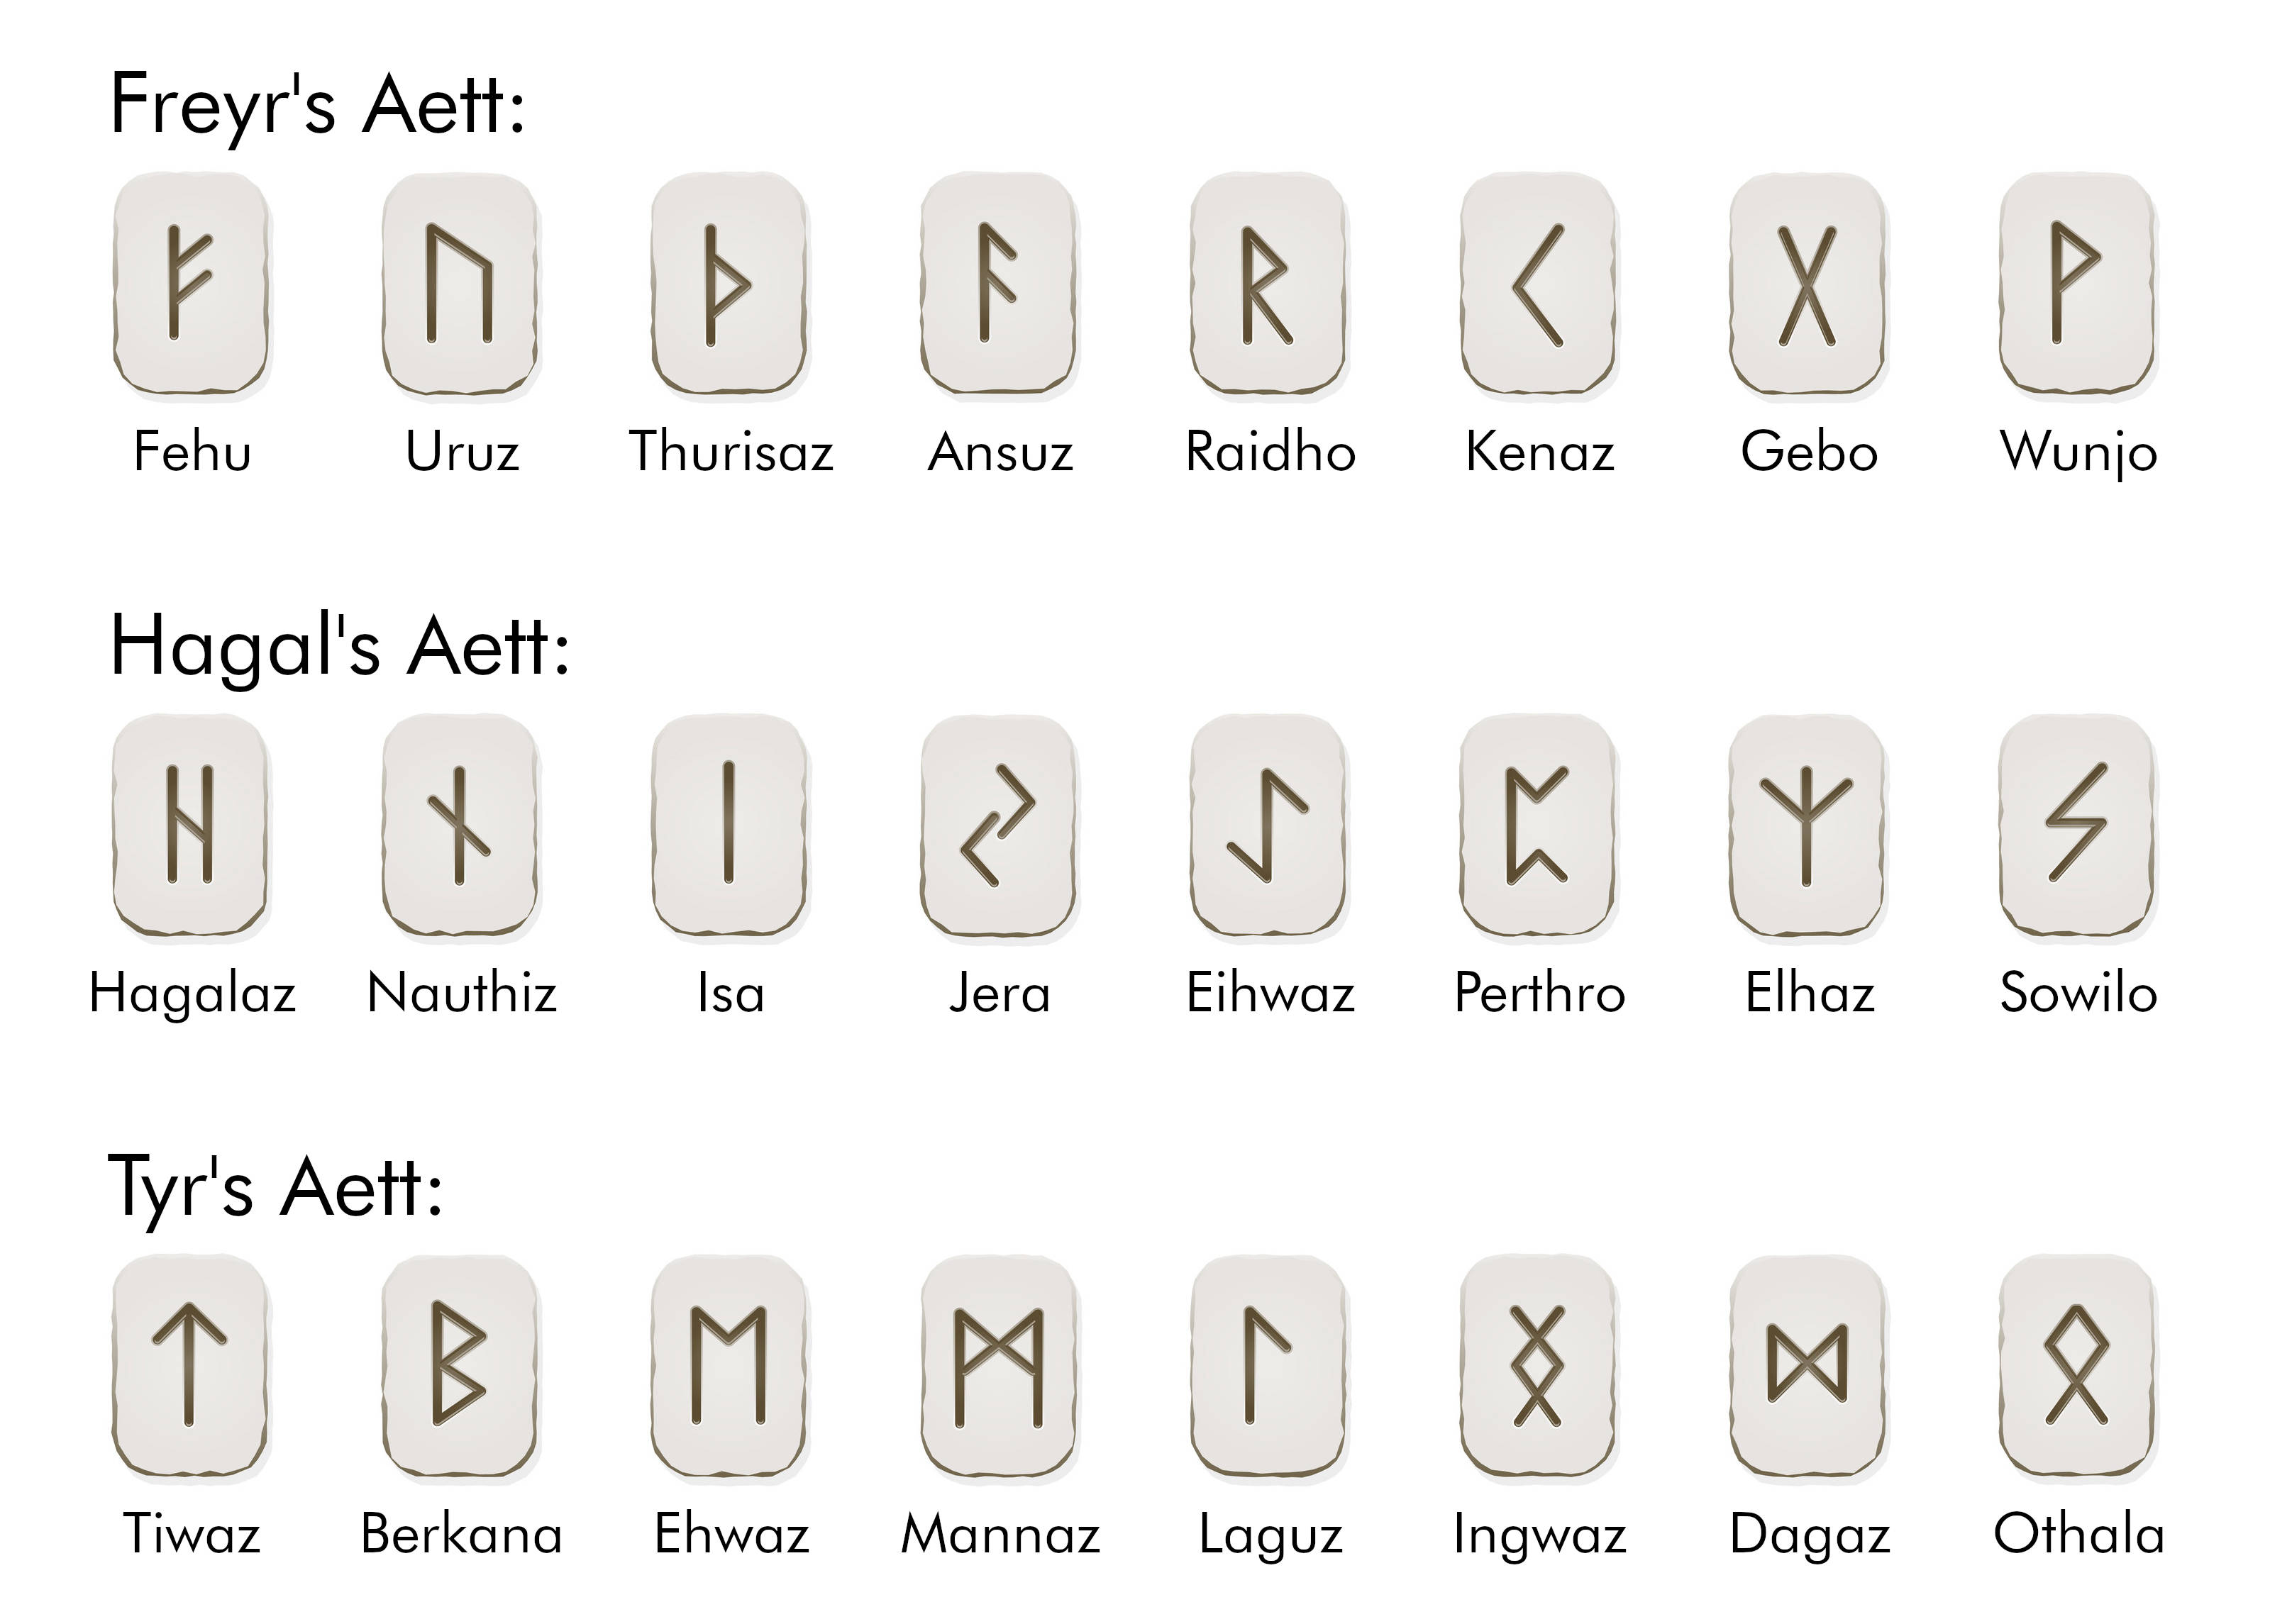 Elder Futhark Runes